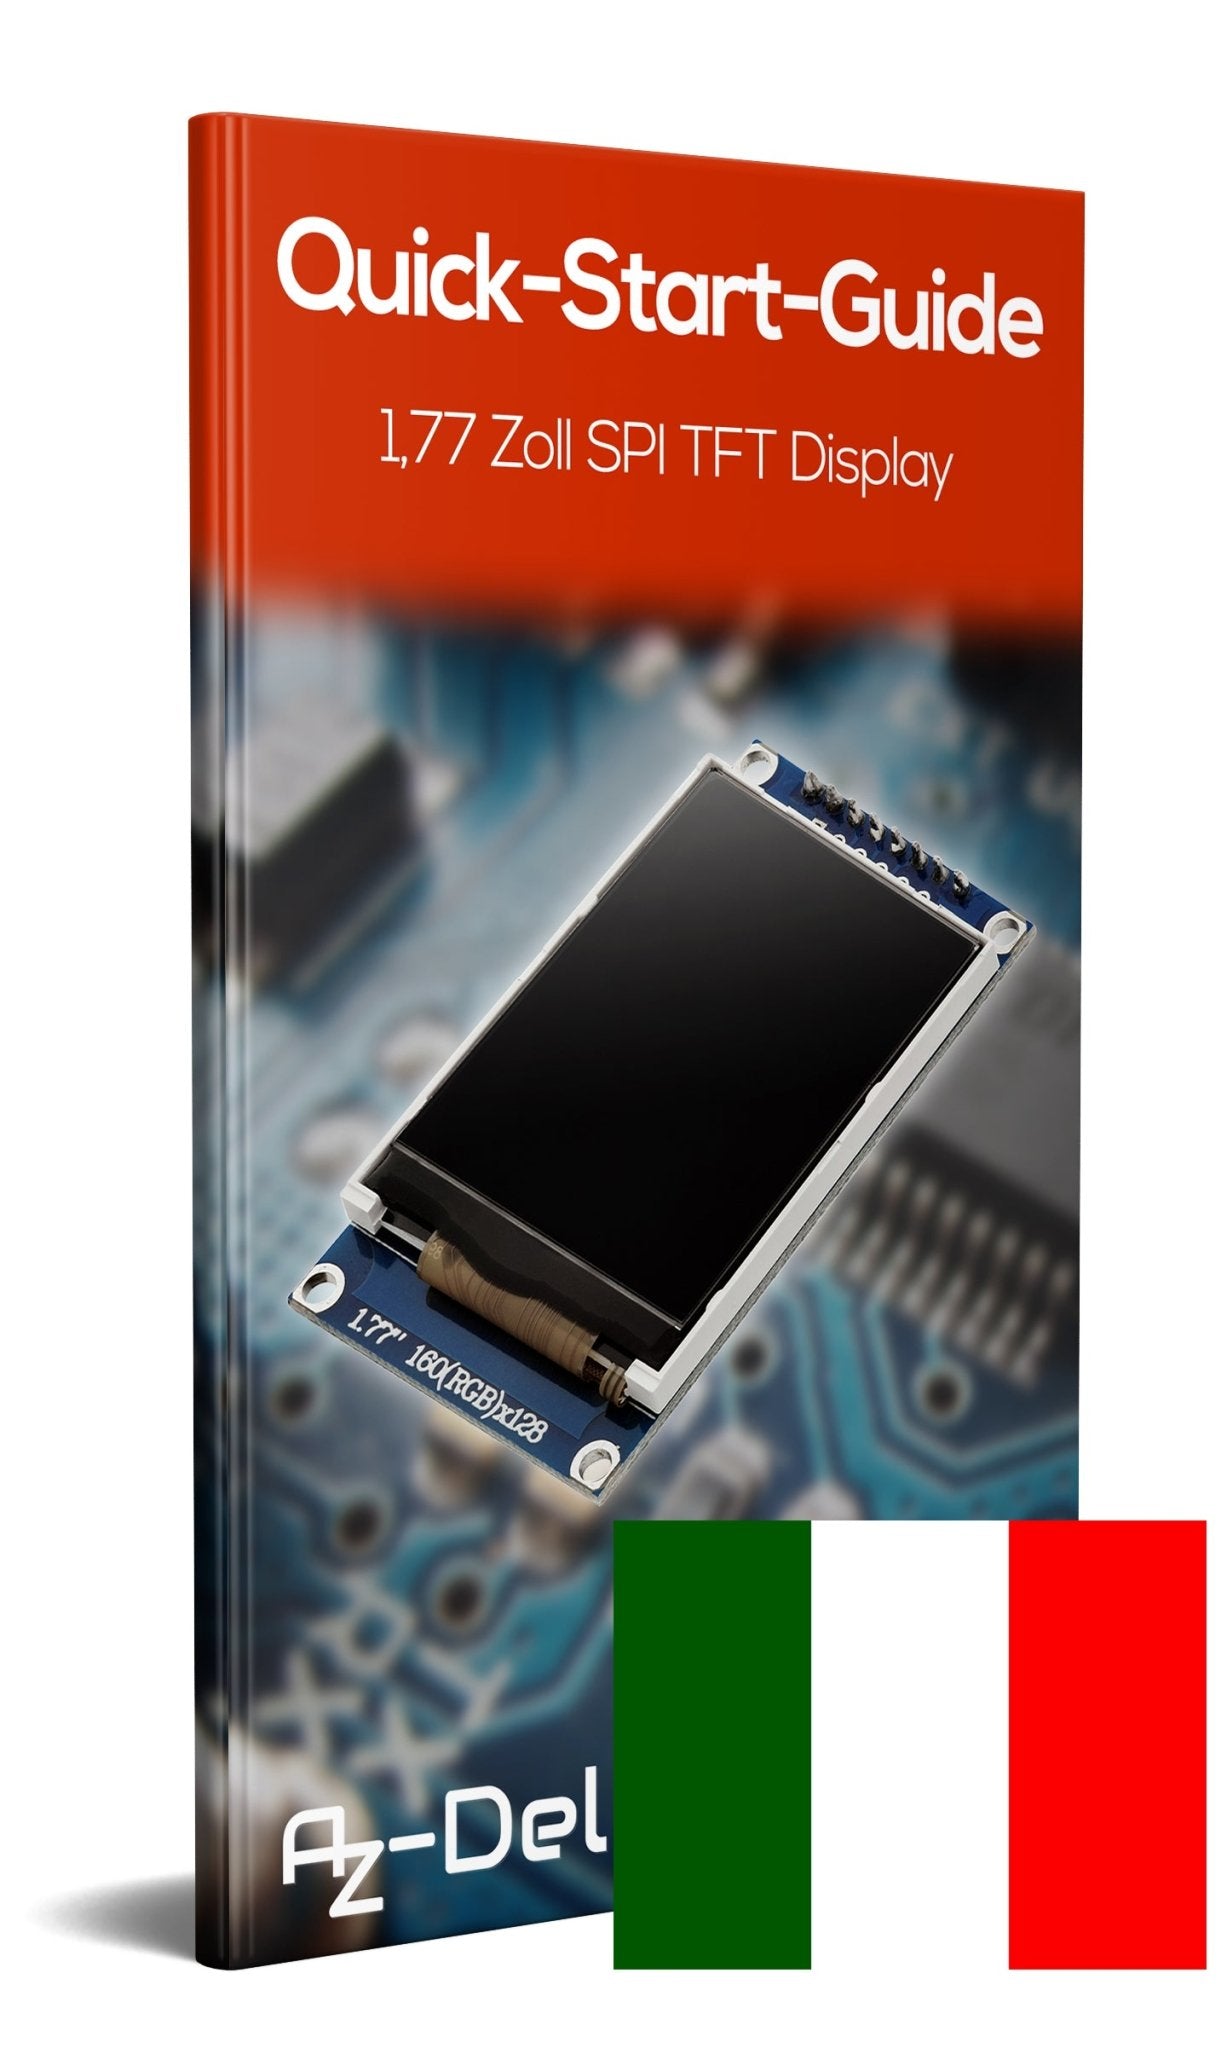 1,77 Zoll SPI TFT-Display und 128x160 Pixeln